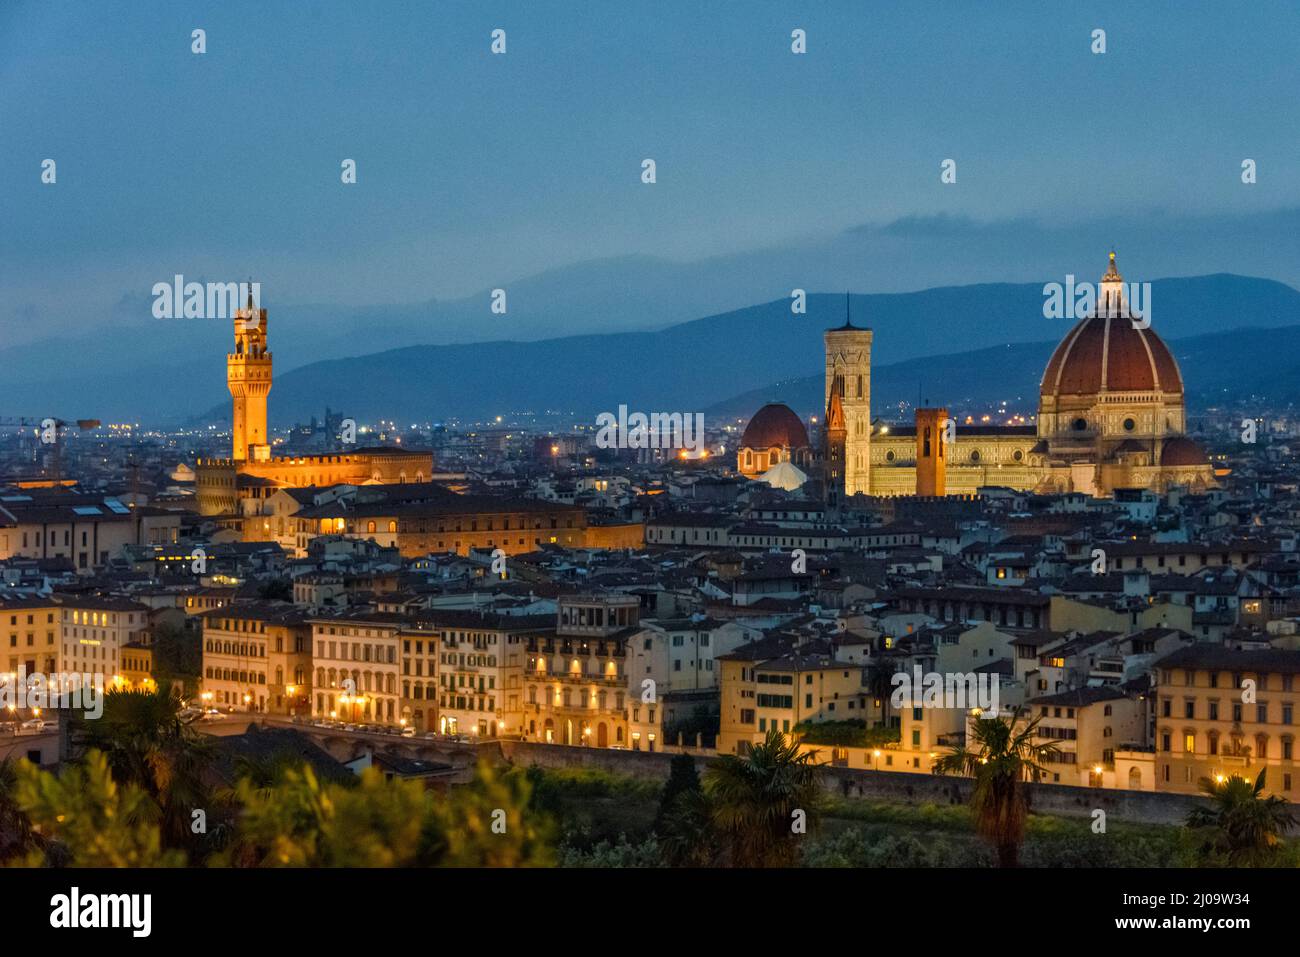 Vista nocturna del horizonte dominada por la catedral de Florencia, el campanario de Gitto y el Palazzo Vecchio, Florencia, región de la Toscana, Italia Foto de stock